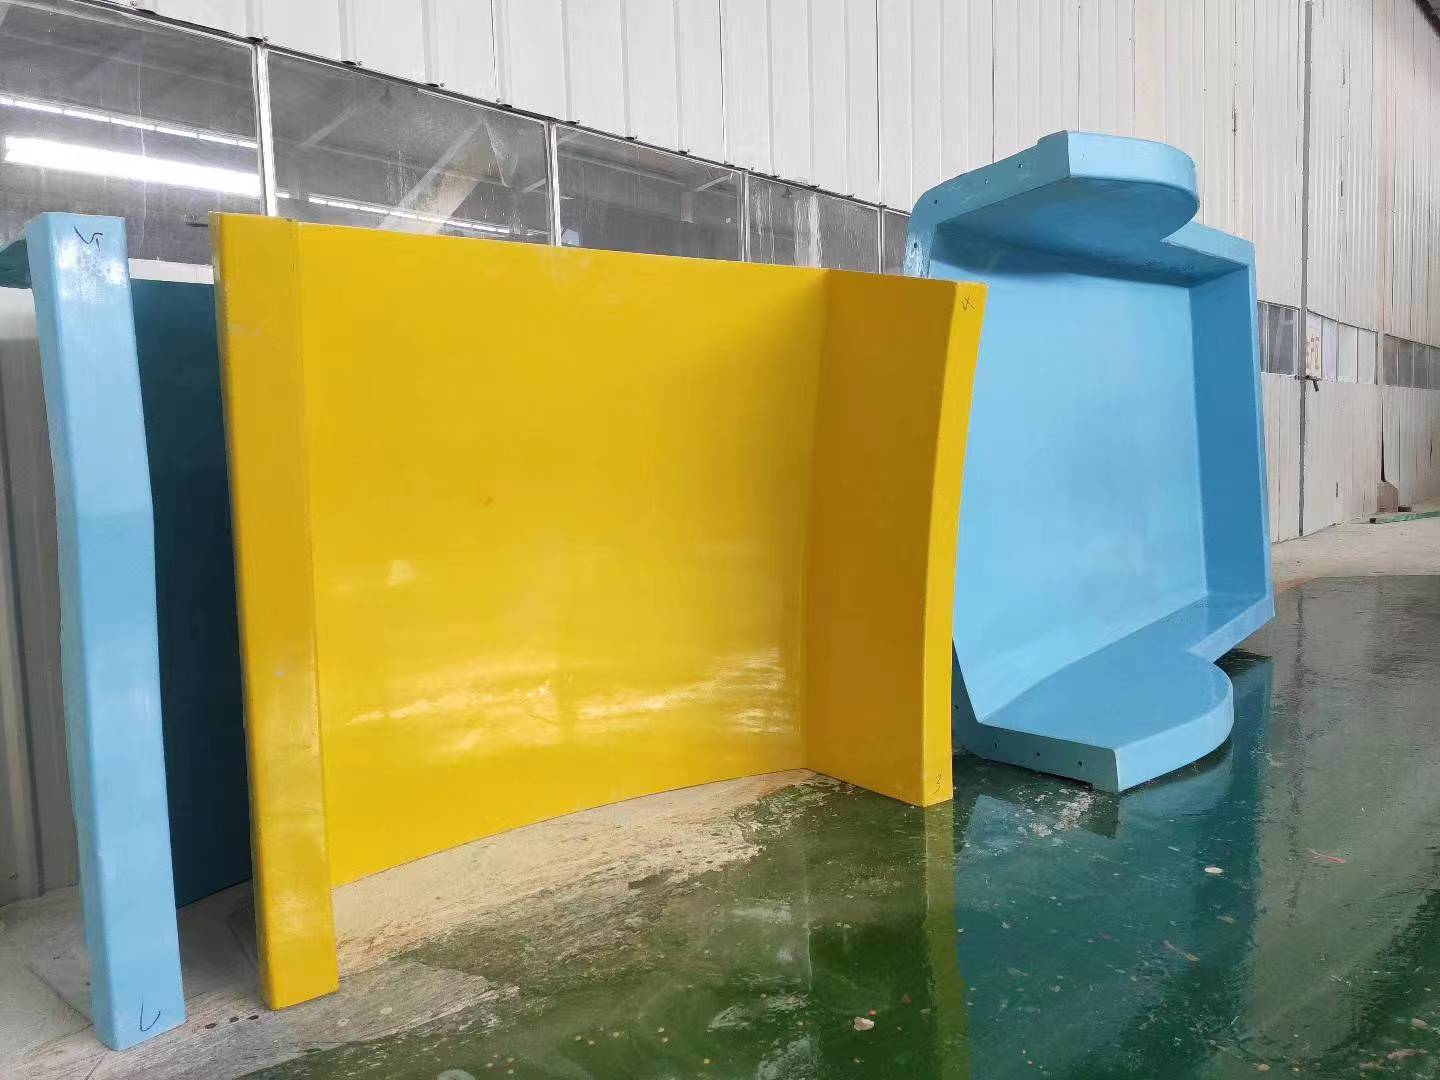 custom family water Slide for water park